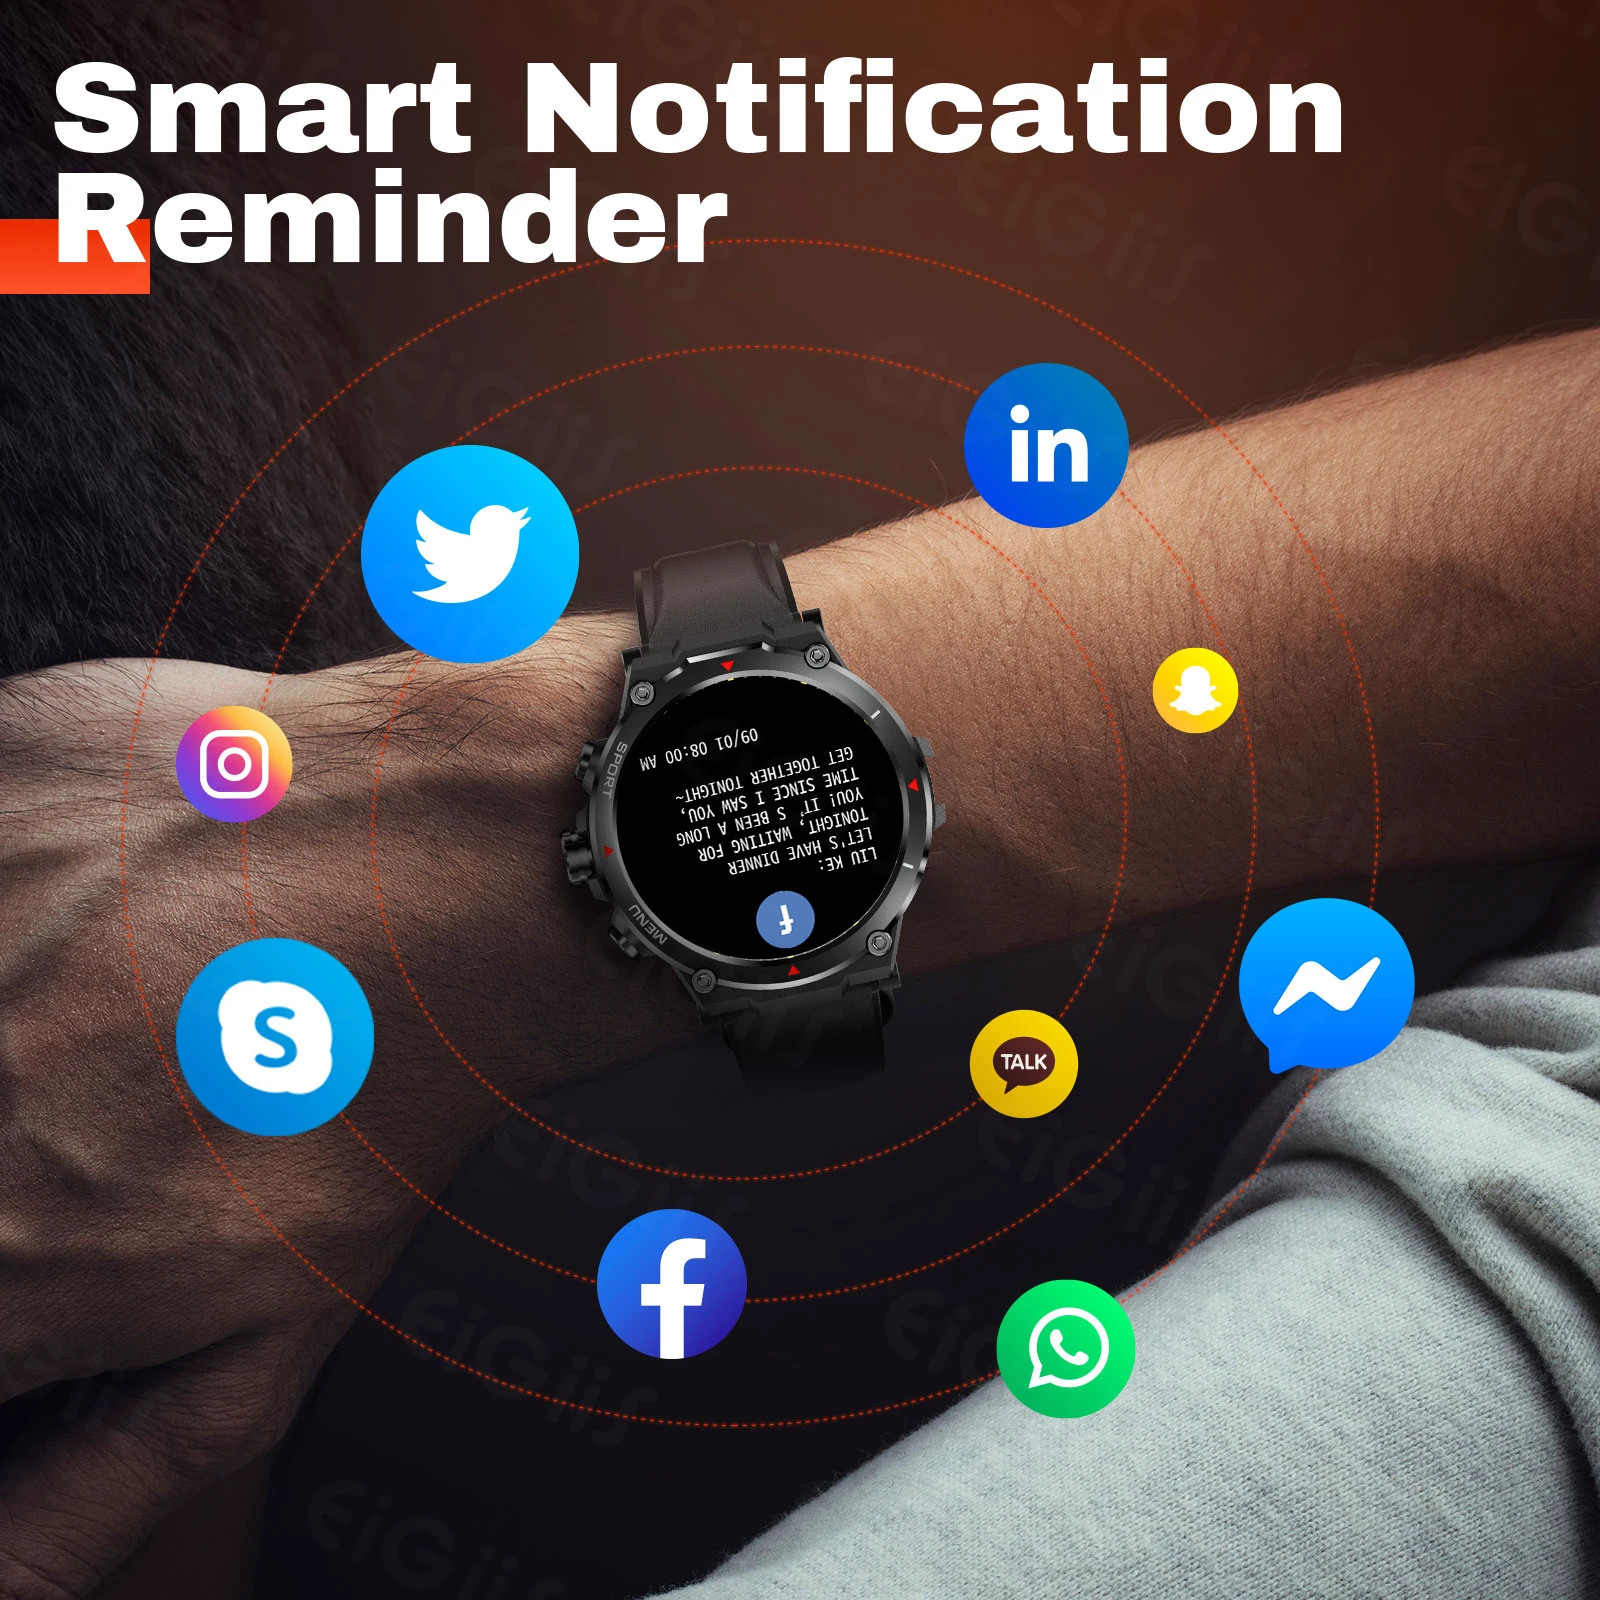 EIGIIS Smart Watch Men 1.39'' IPS Screen Bluetooth Call Wrist